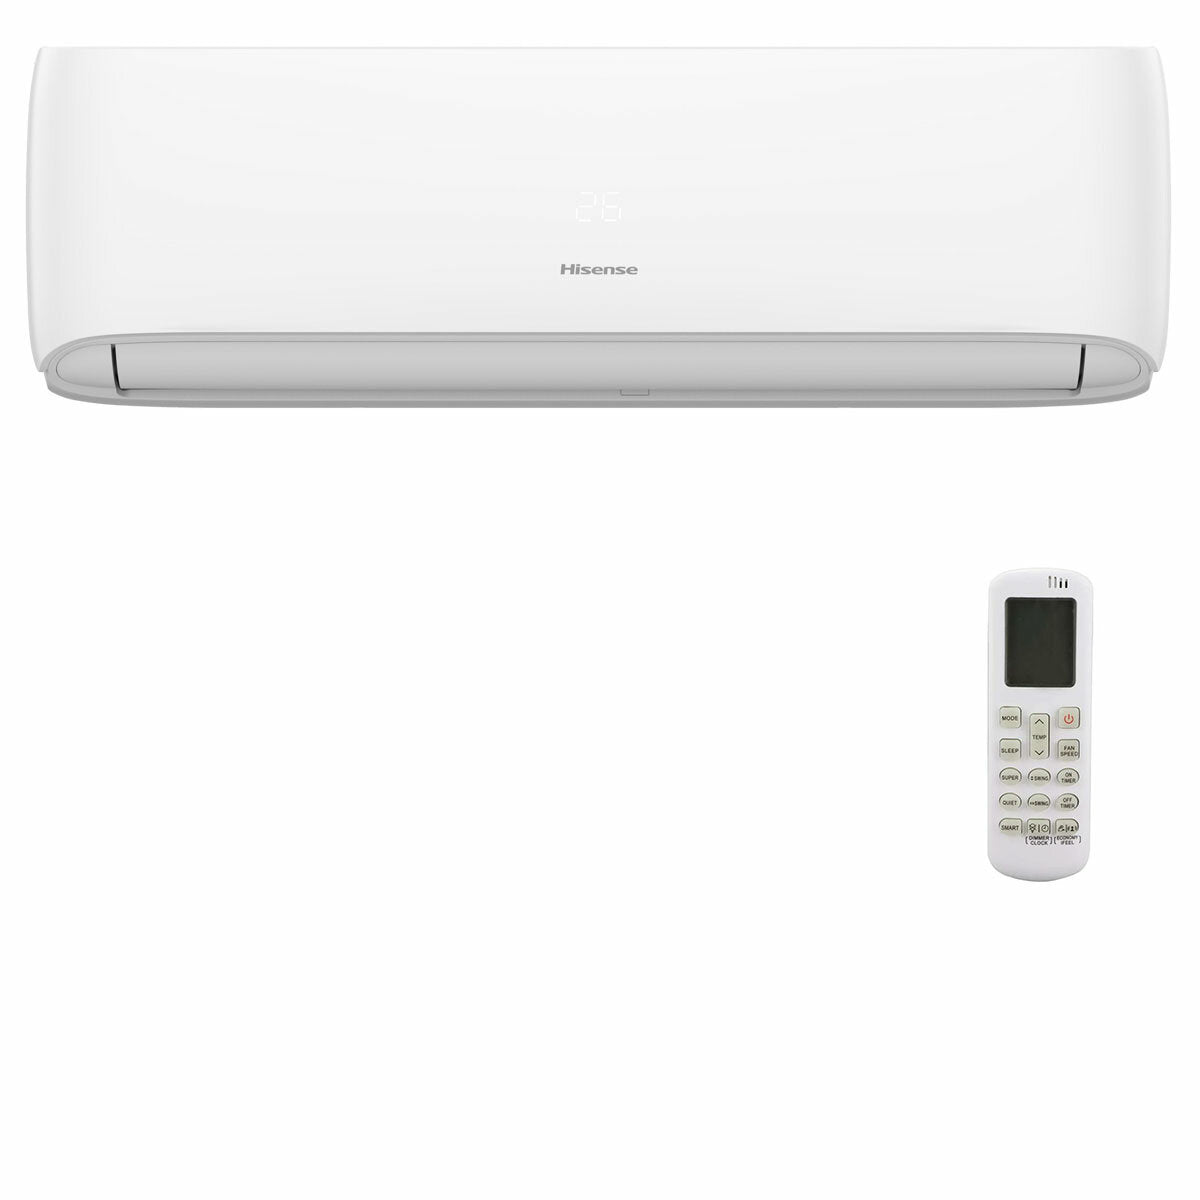 Hisense Hi-Comfort quadri split air conditioner 7000 + 7000 + 9000 + 24000 BTU wifi inverter outdoor unit 12.5 kW